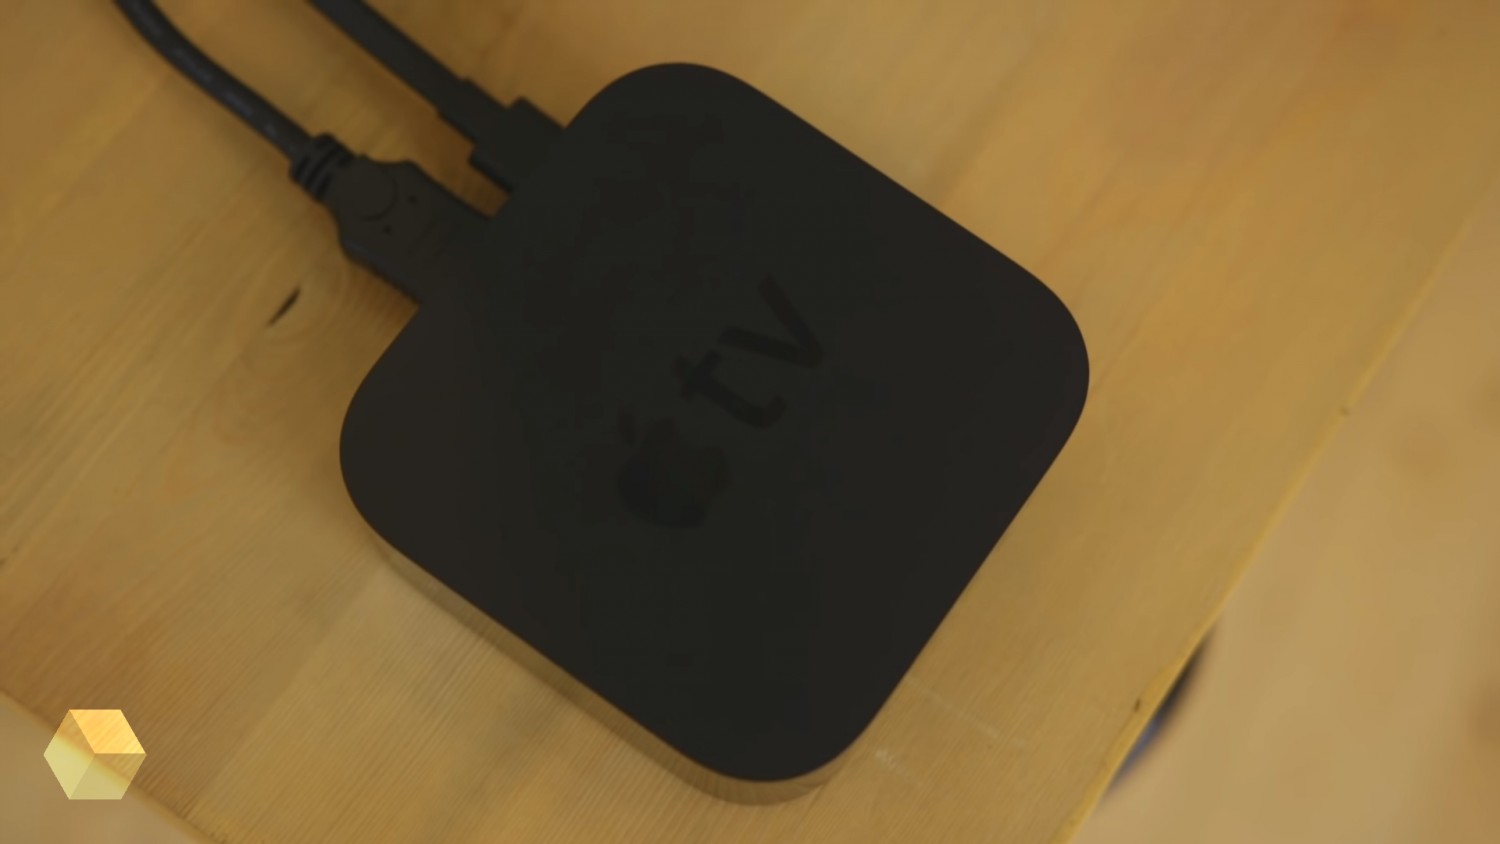 В коде tvOS 13.4 beta 1 найдено упоминание новой модели Apple TV